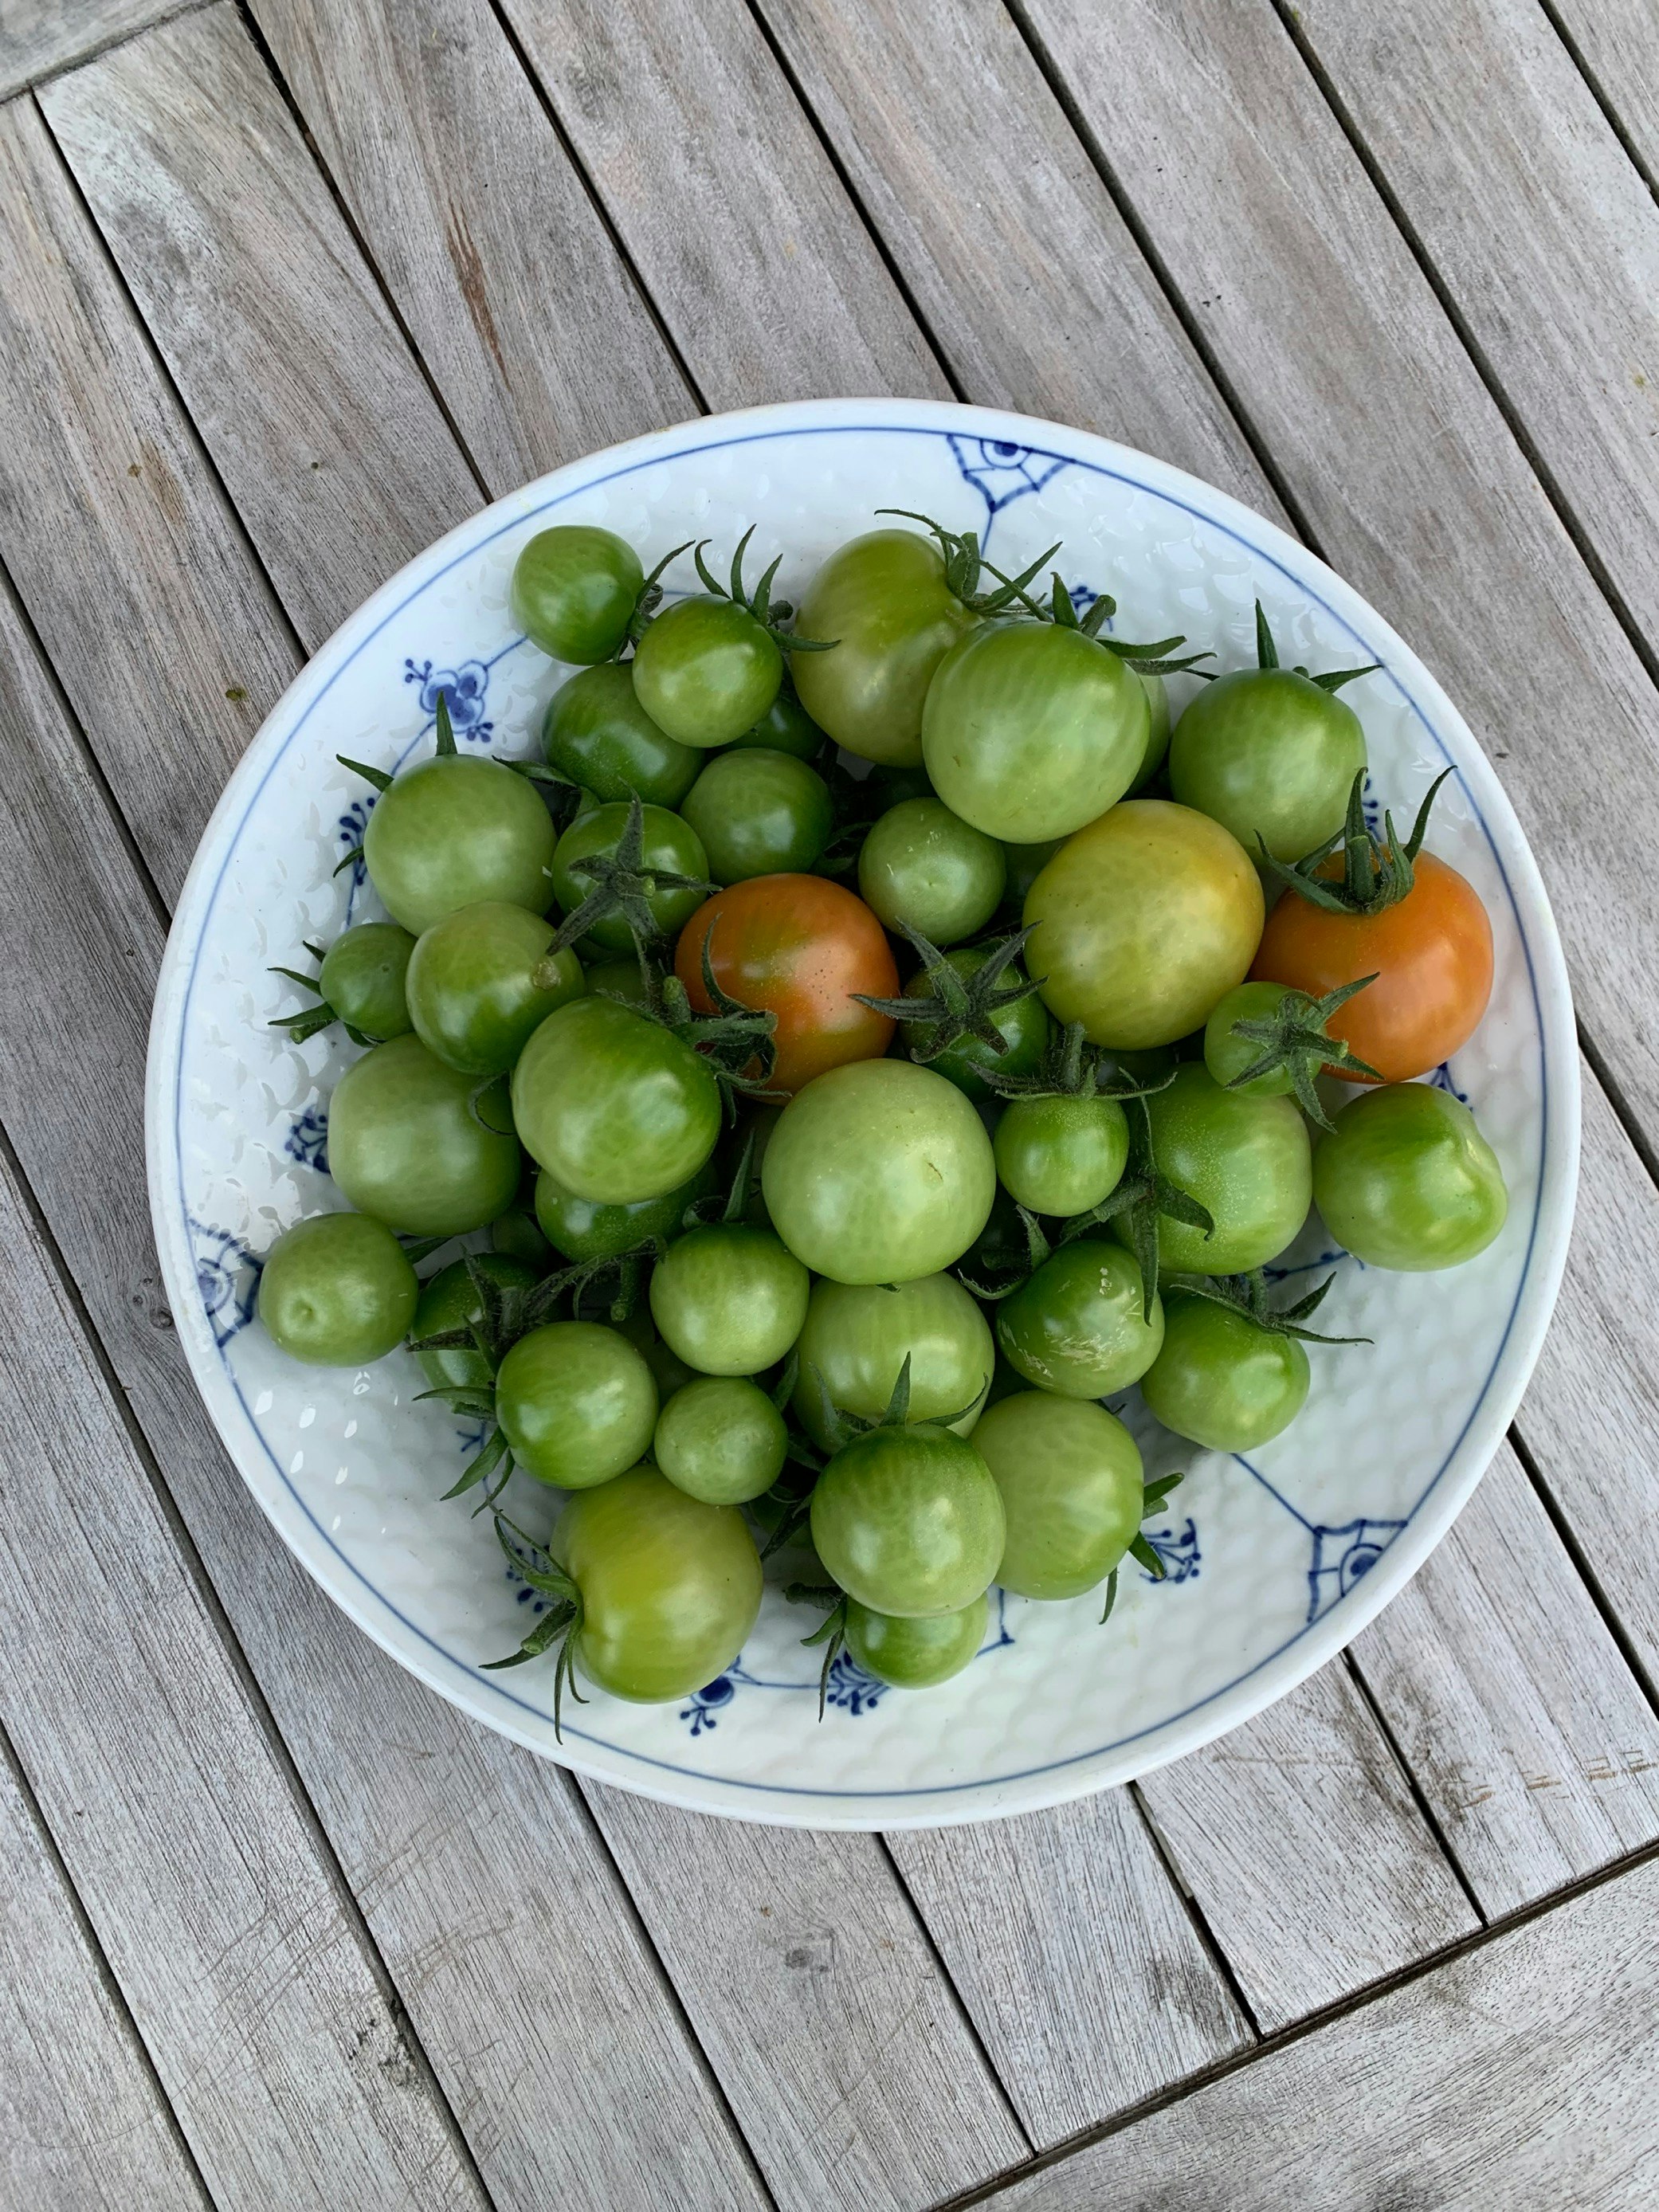 Brug de grønne tomater til syltede grønne tomater. 